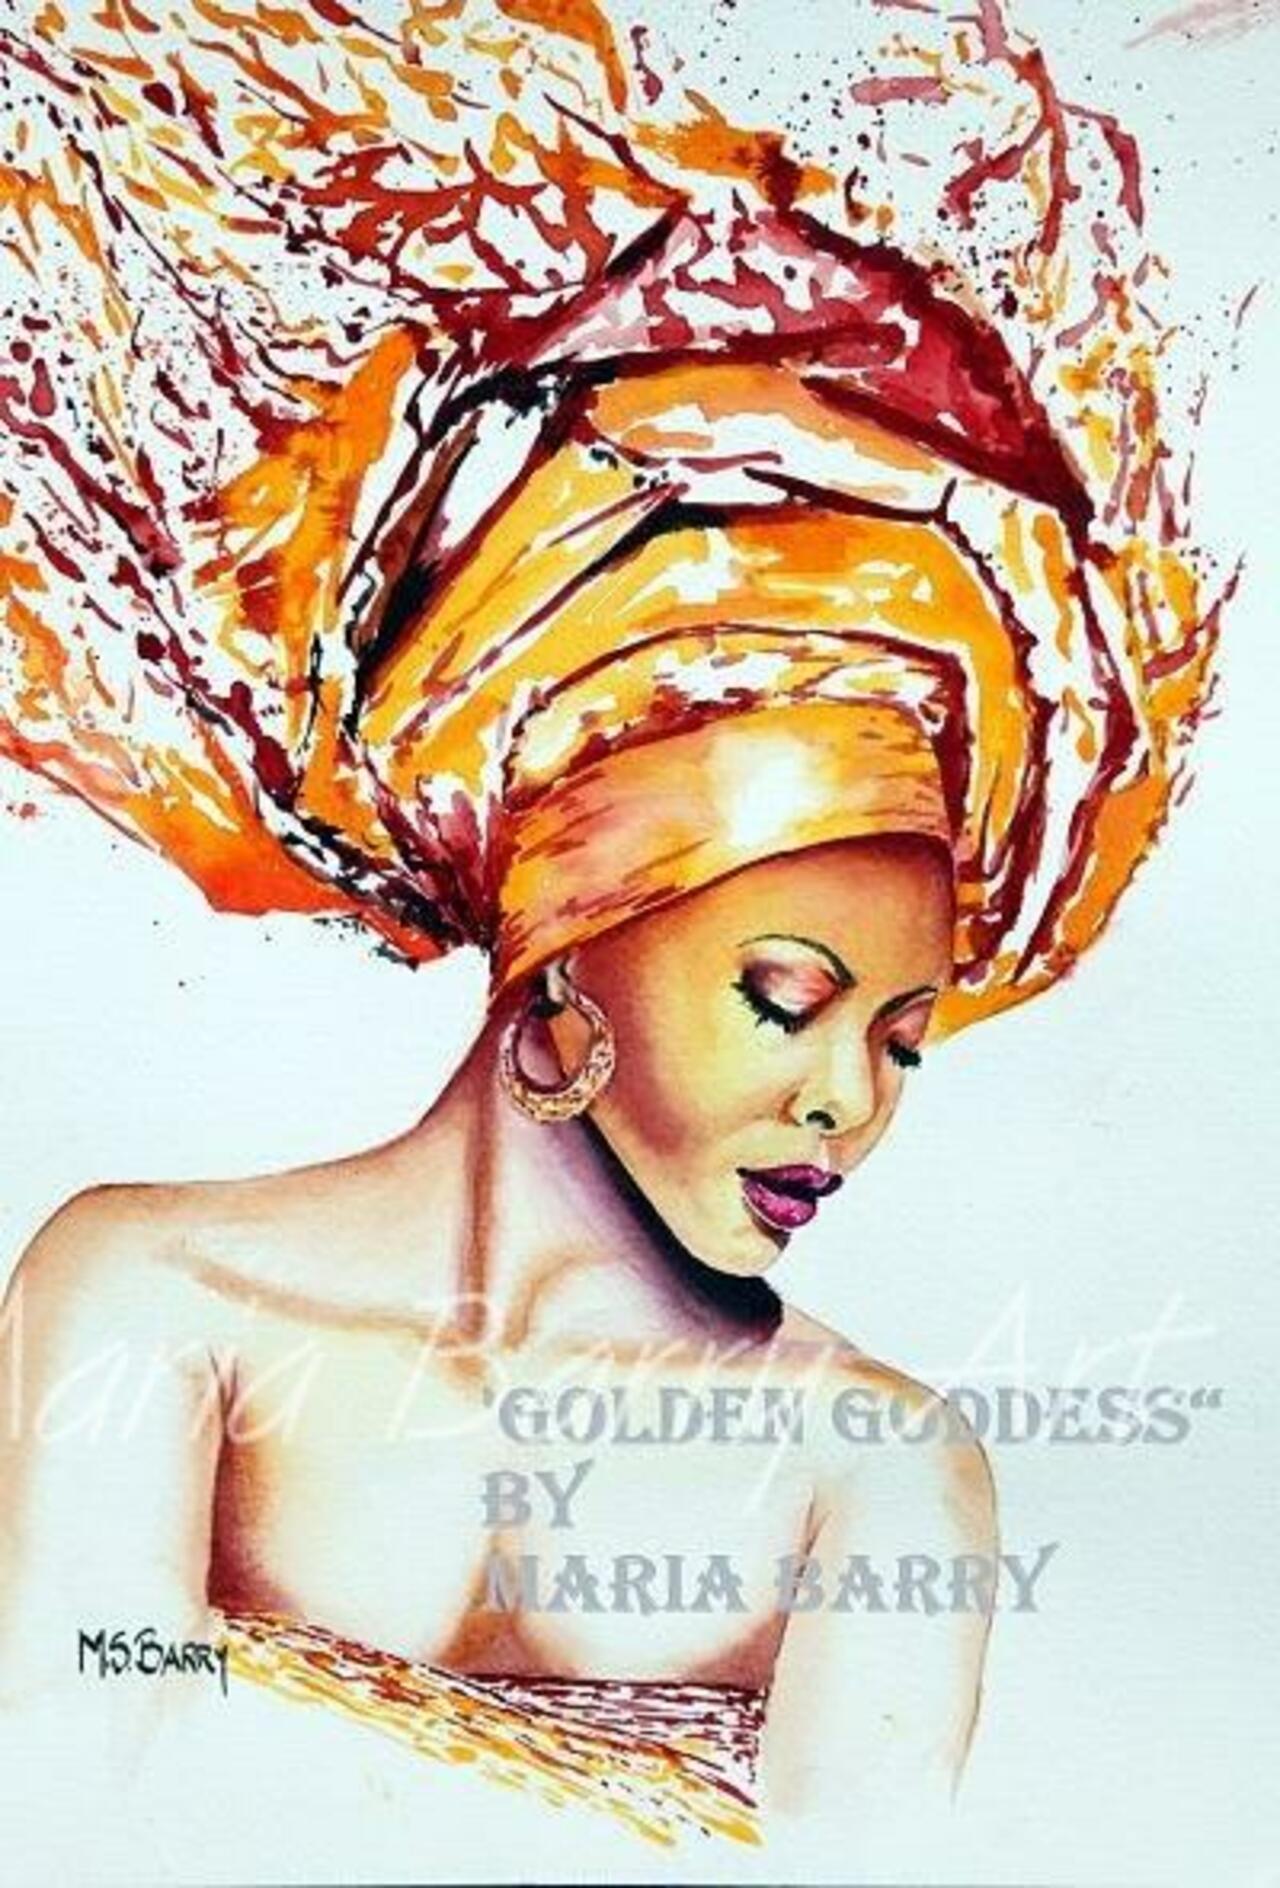 #Africa #Woman #Art #Watercolour #Print #Watercolor #MariaBarryArt http://tinyurl.com/ktz6nwq  http://t.co/1wtrlA7dmd